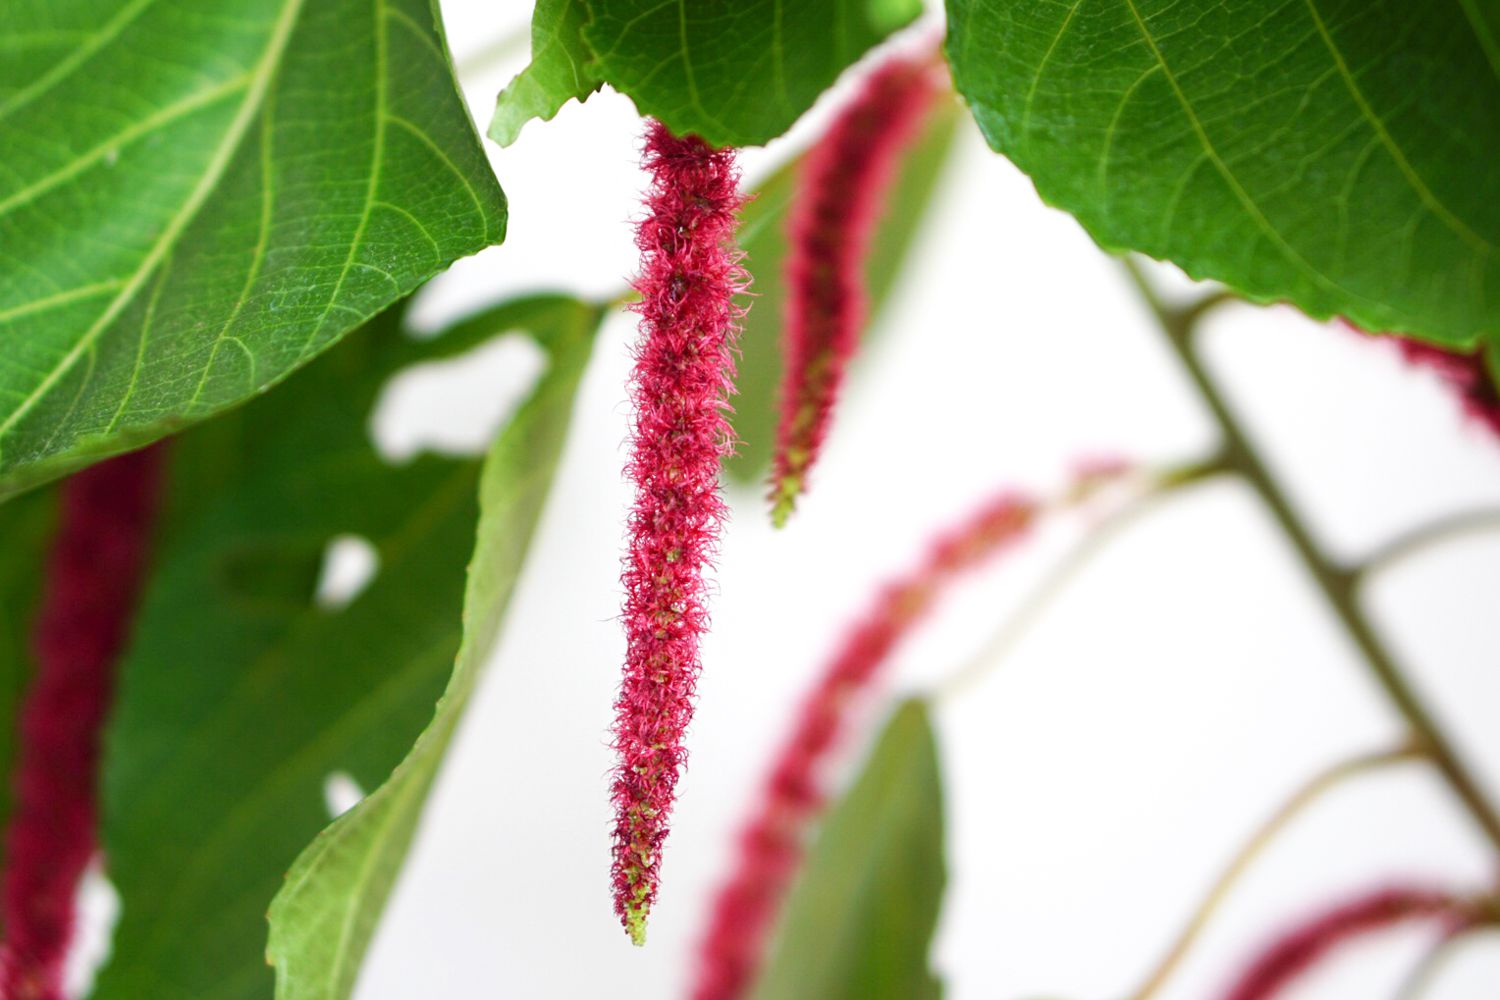 Acalypha-Pflanze mit roten flaschenbürstenähnlichen Blüten in Nahaufnahme